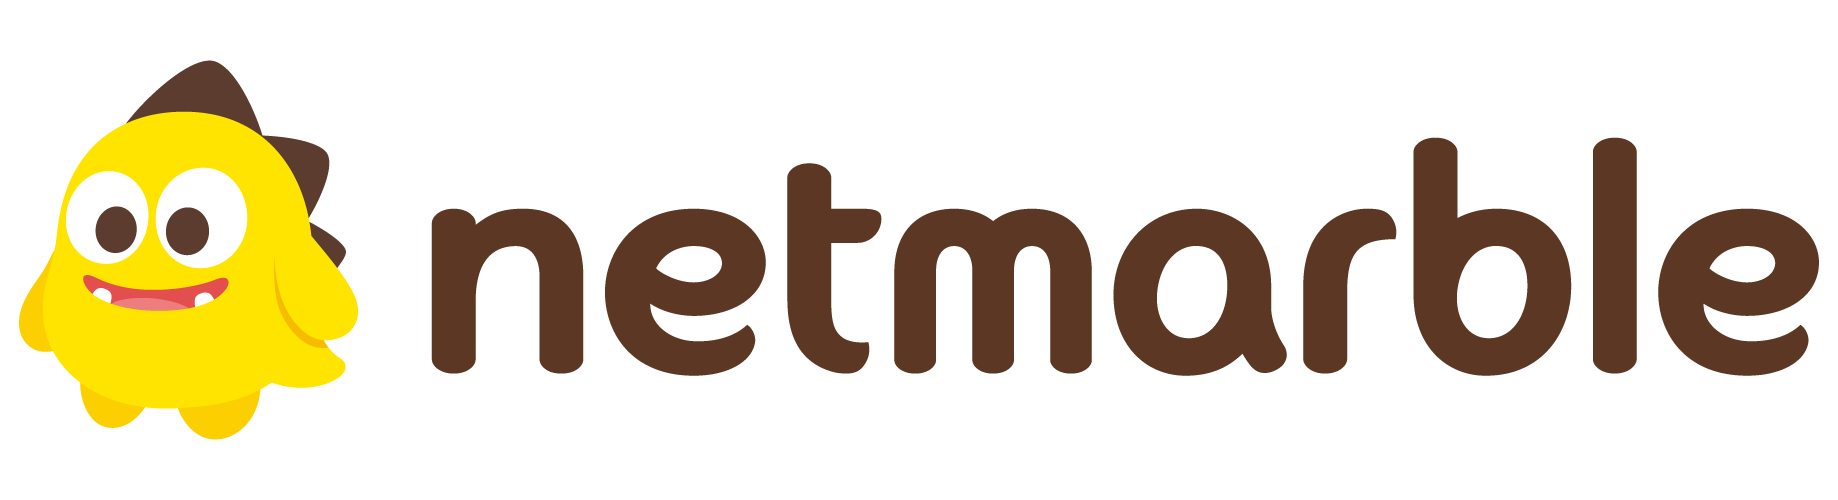 Netmarble logo